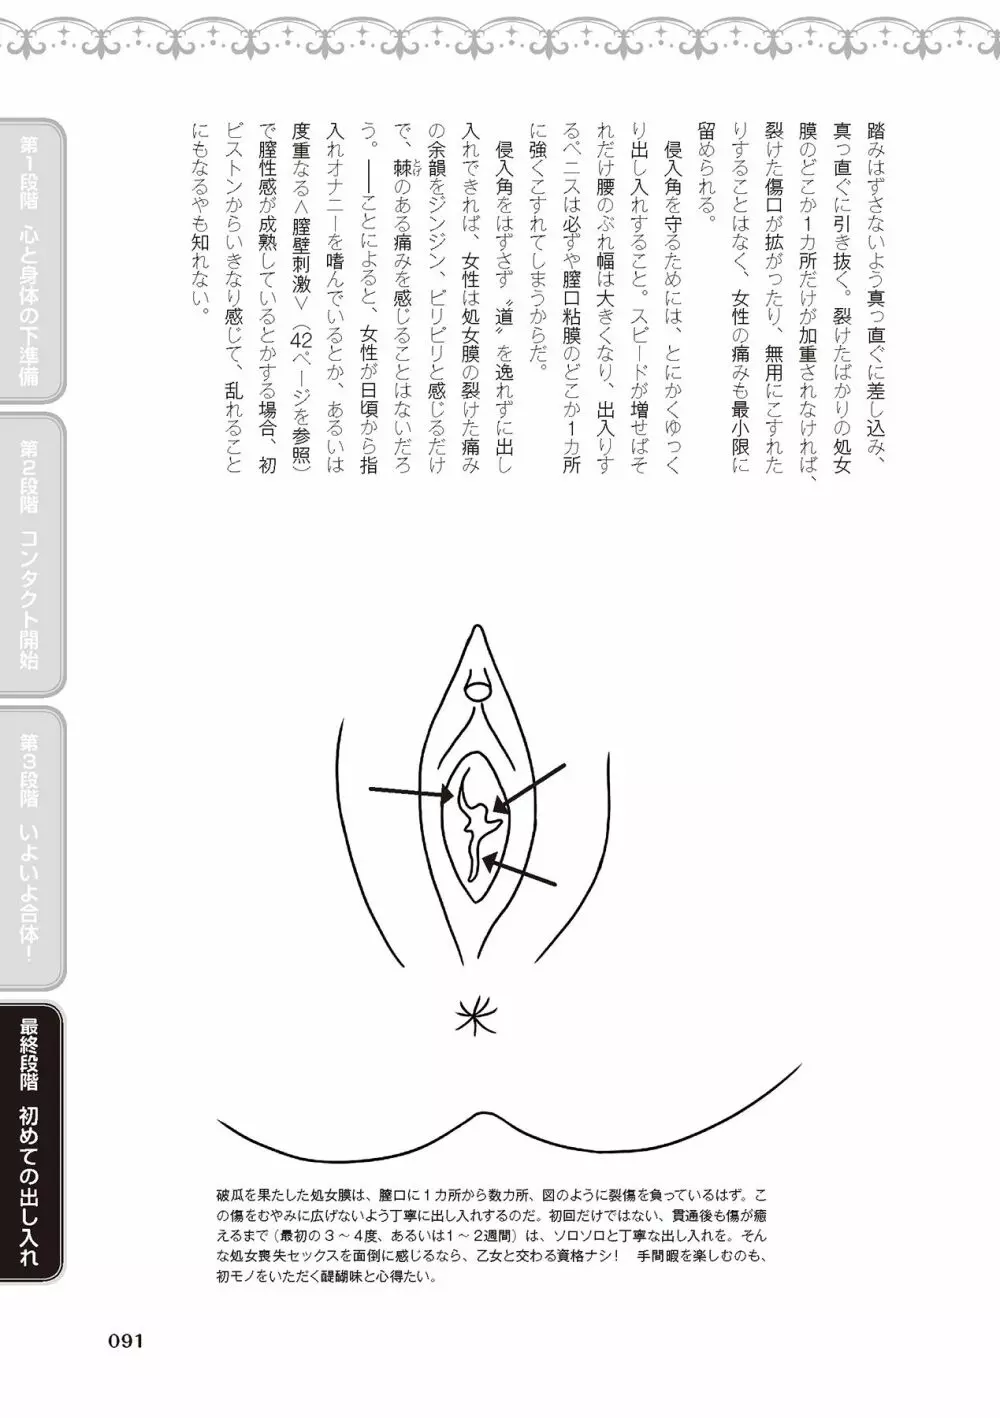 処女喪失・ロストヴァージンSEX完全マニュアル イラスト版……初エッチ 93ページ